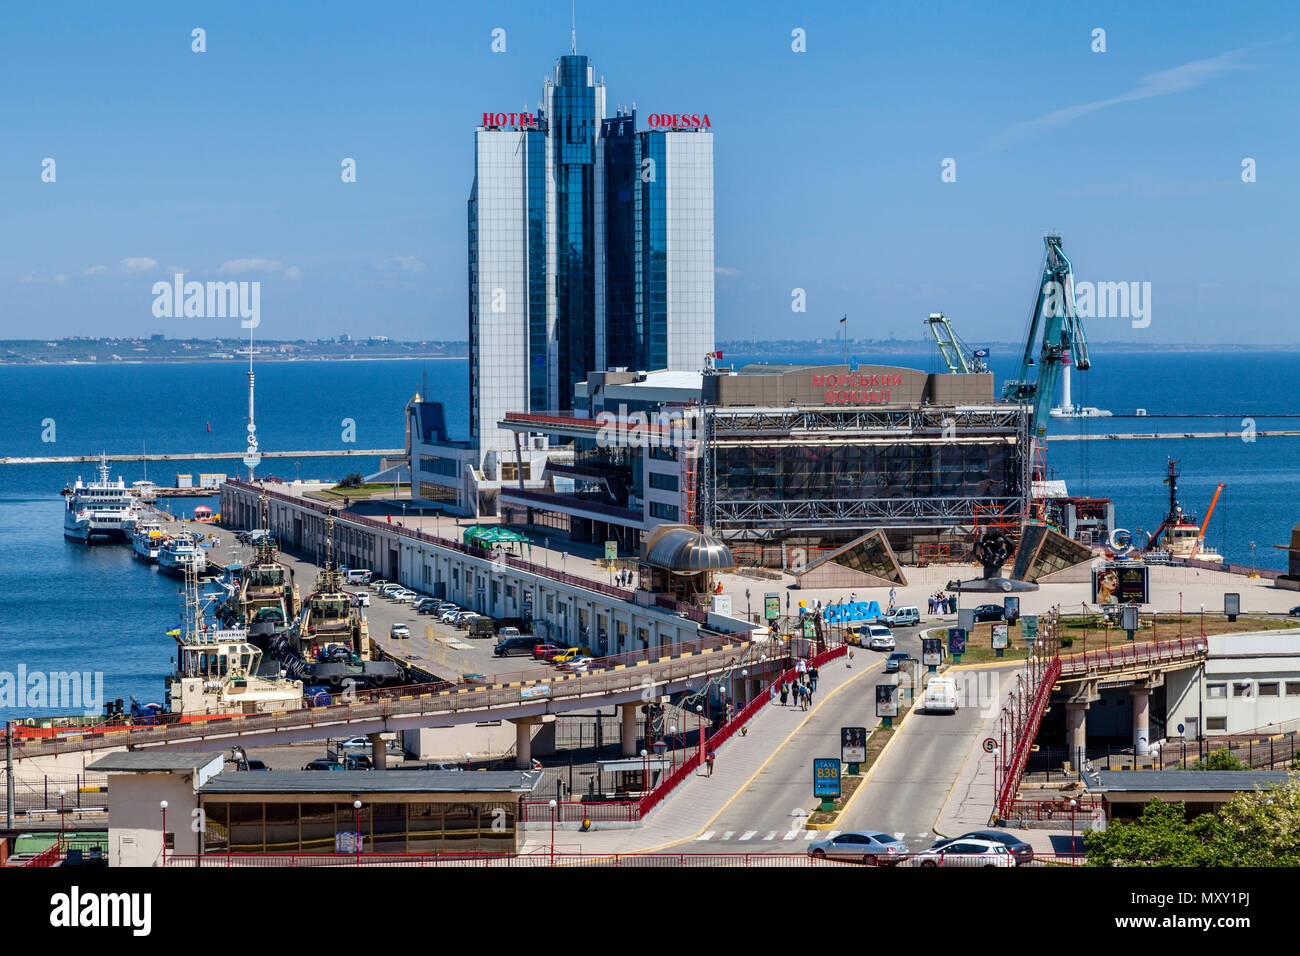 The Port Of Odessa, Odessa, Ukraine Stock Photo